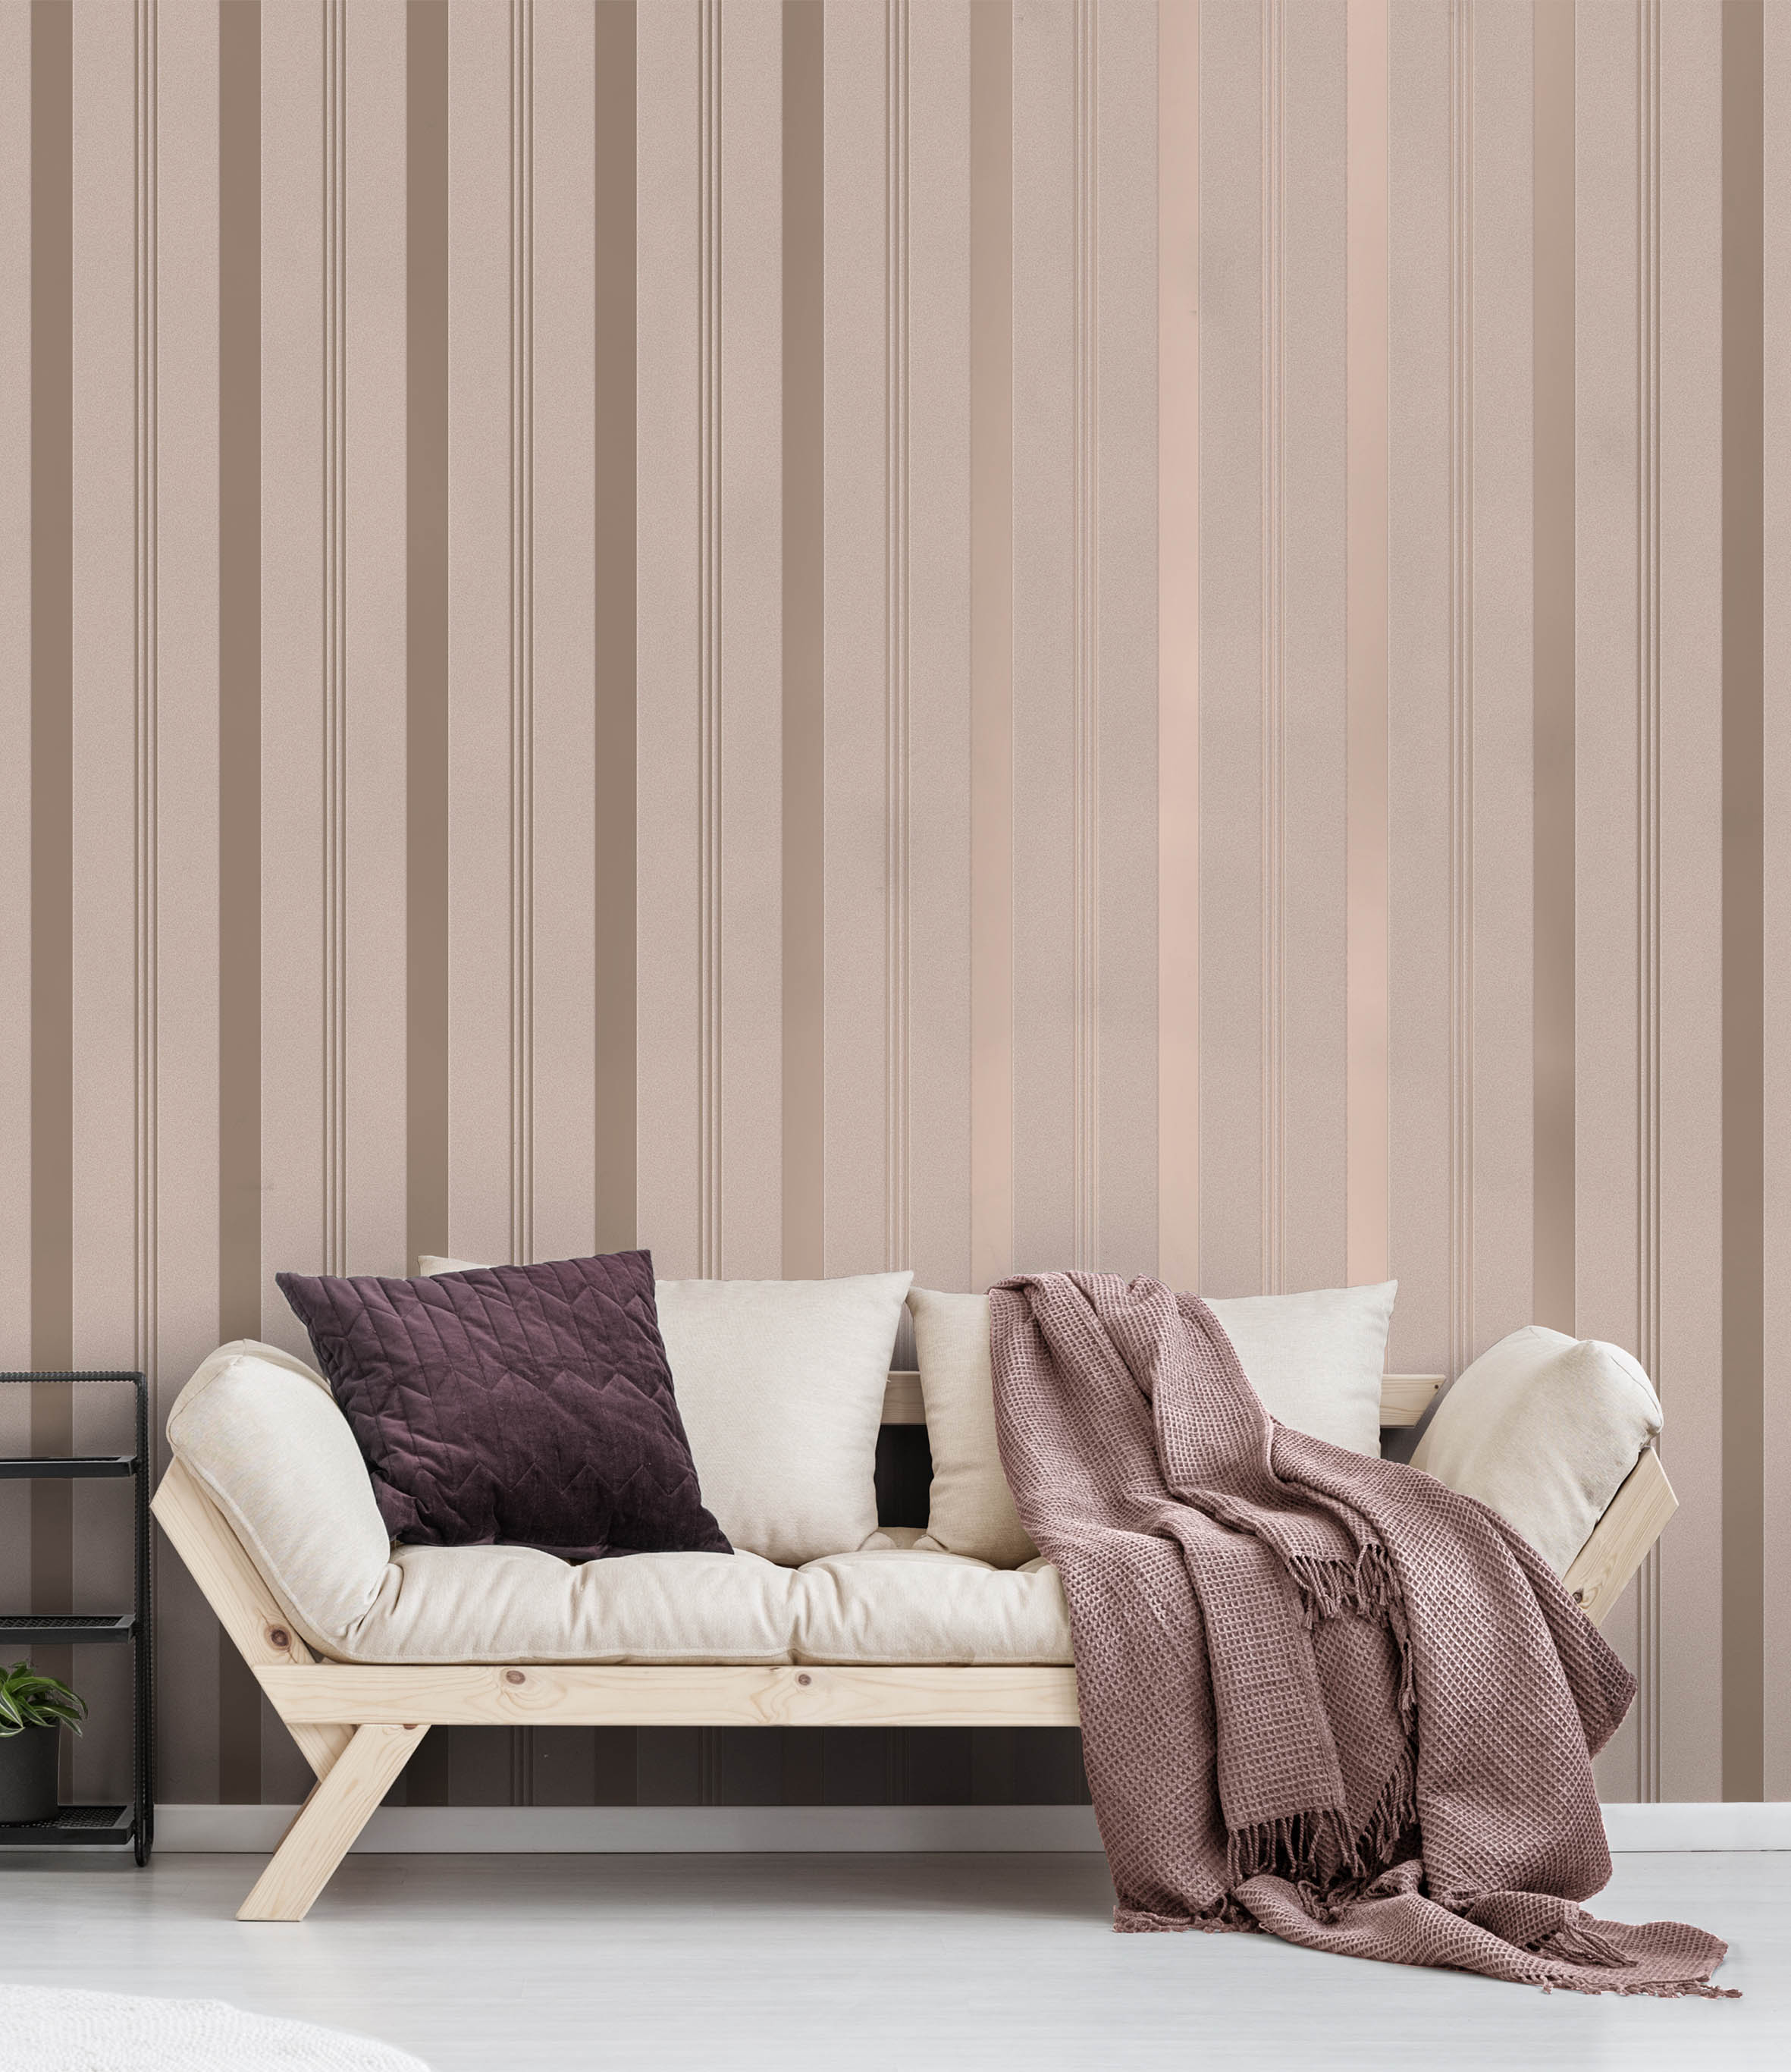 Bexley Stripe Pink Wallpaper | WonderWall by Nobletts | #Variant SKU# | CWV